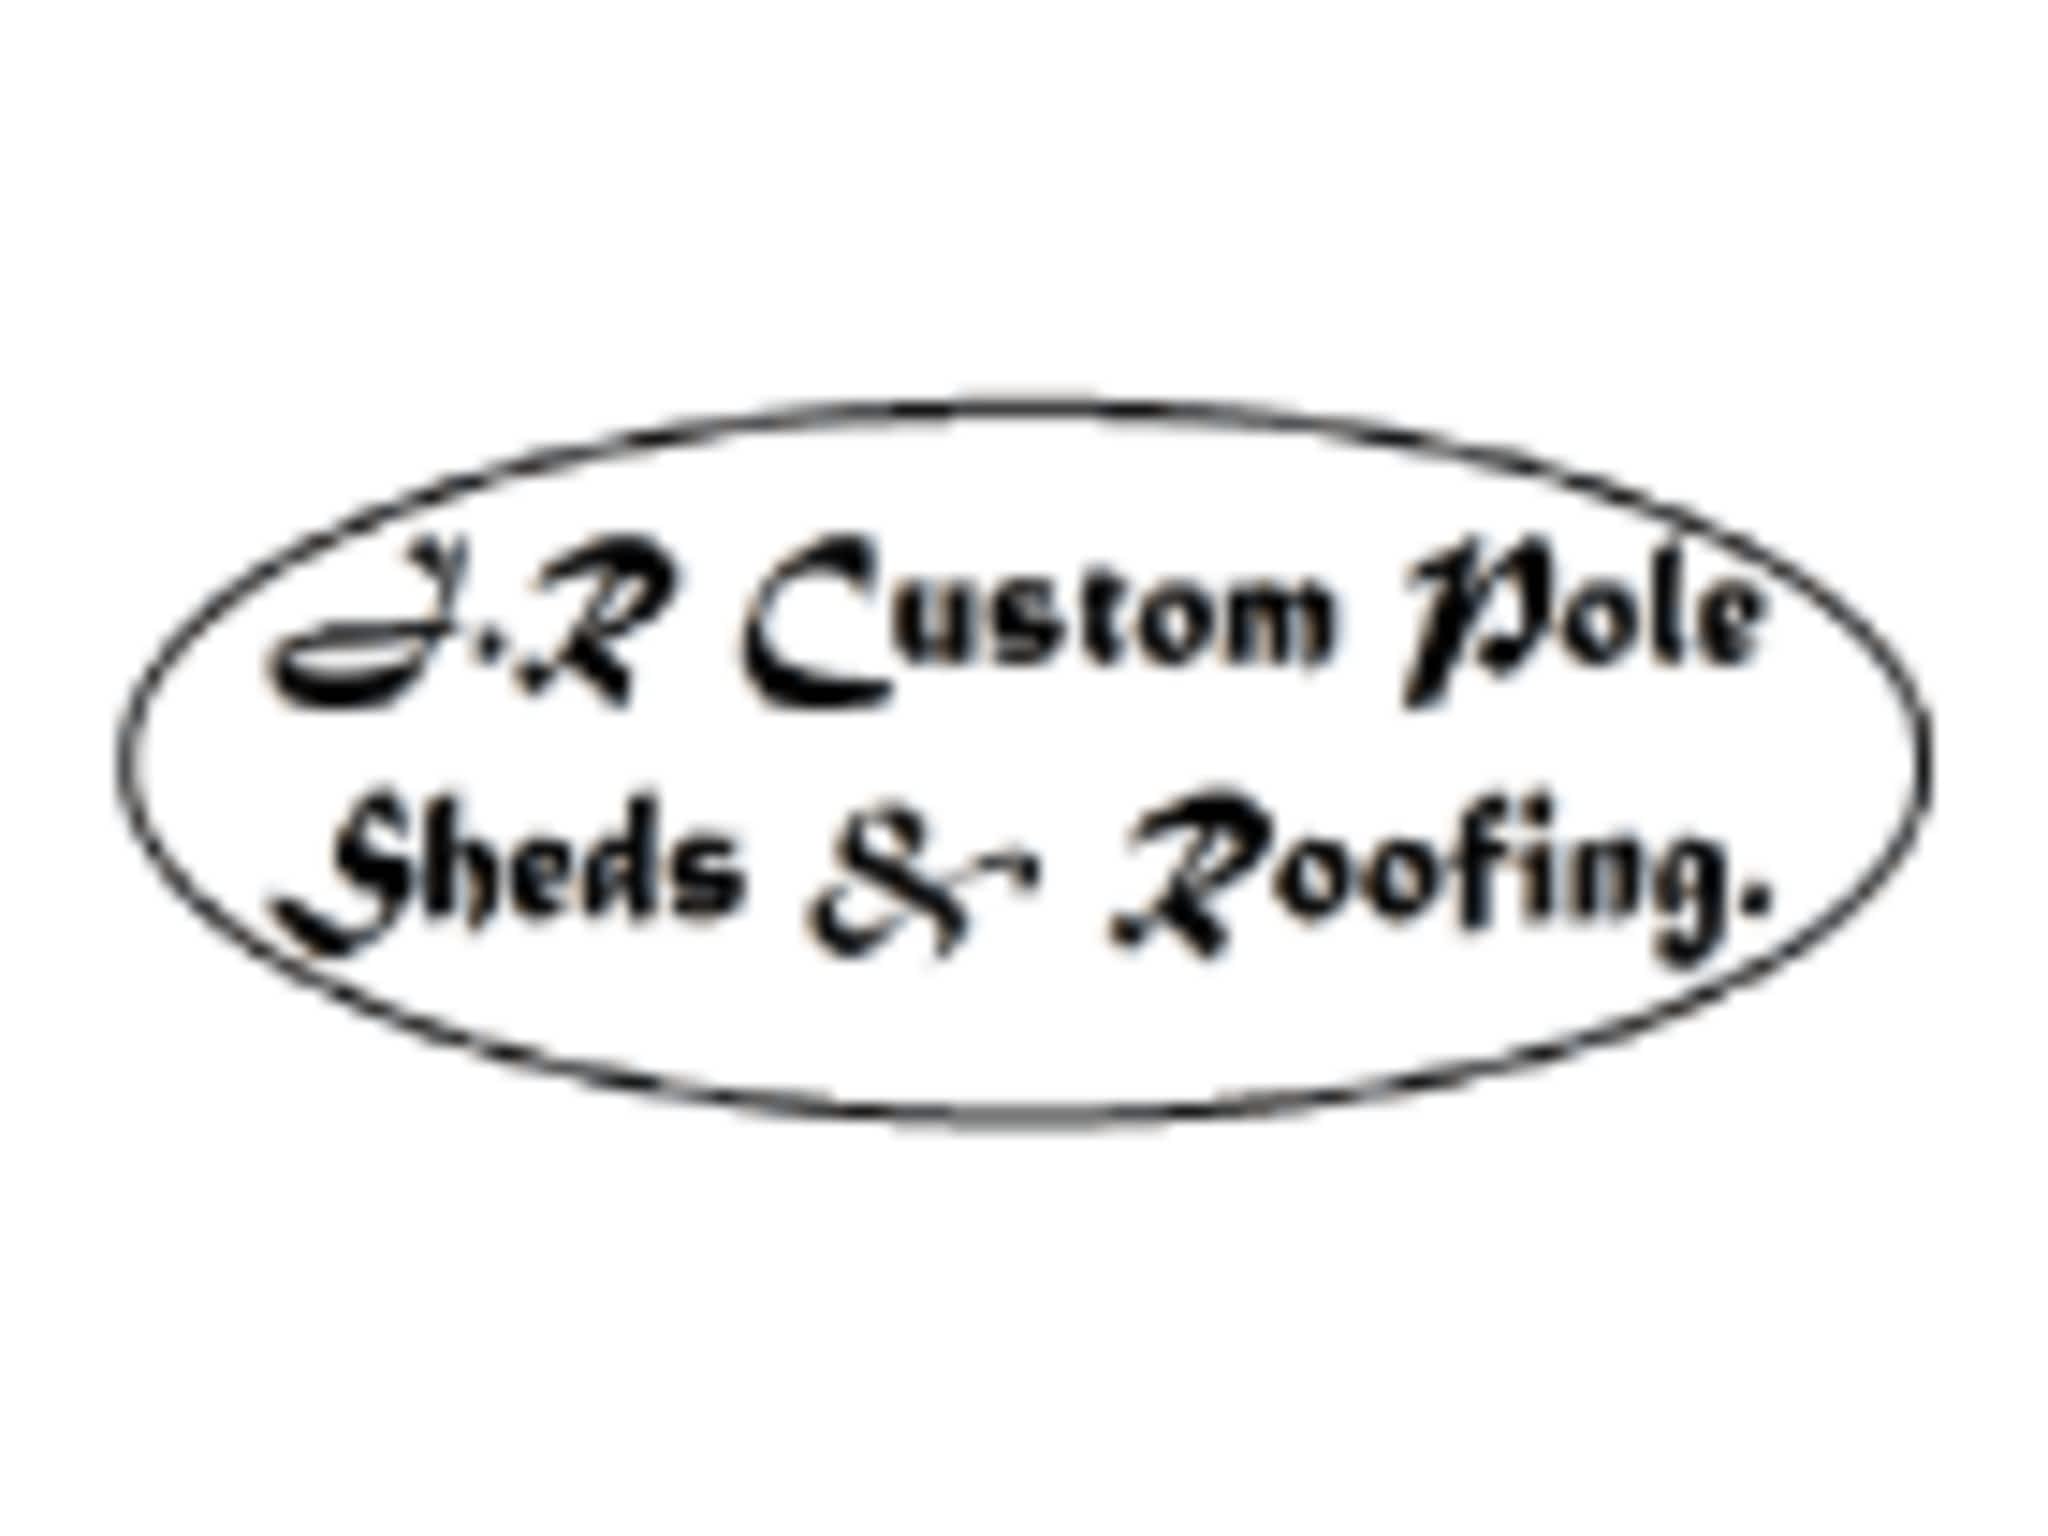 photo J & R Custom Pole Sheds & Roofing